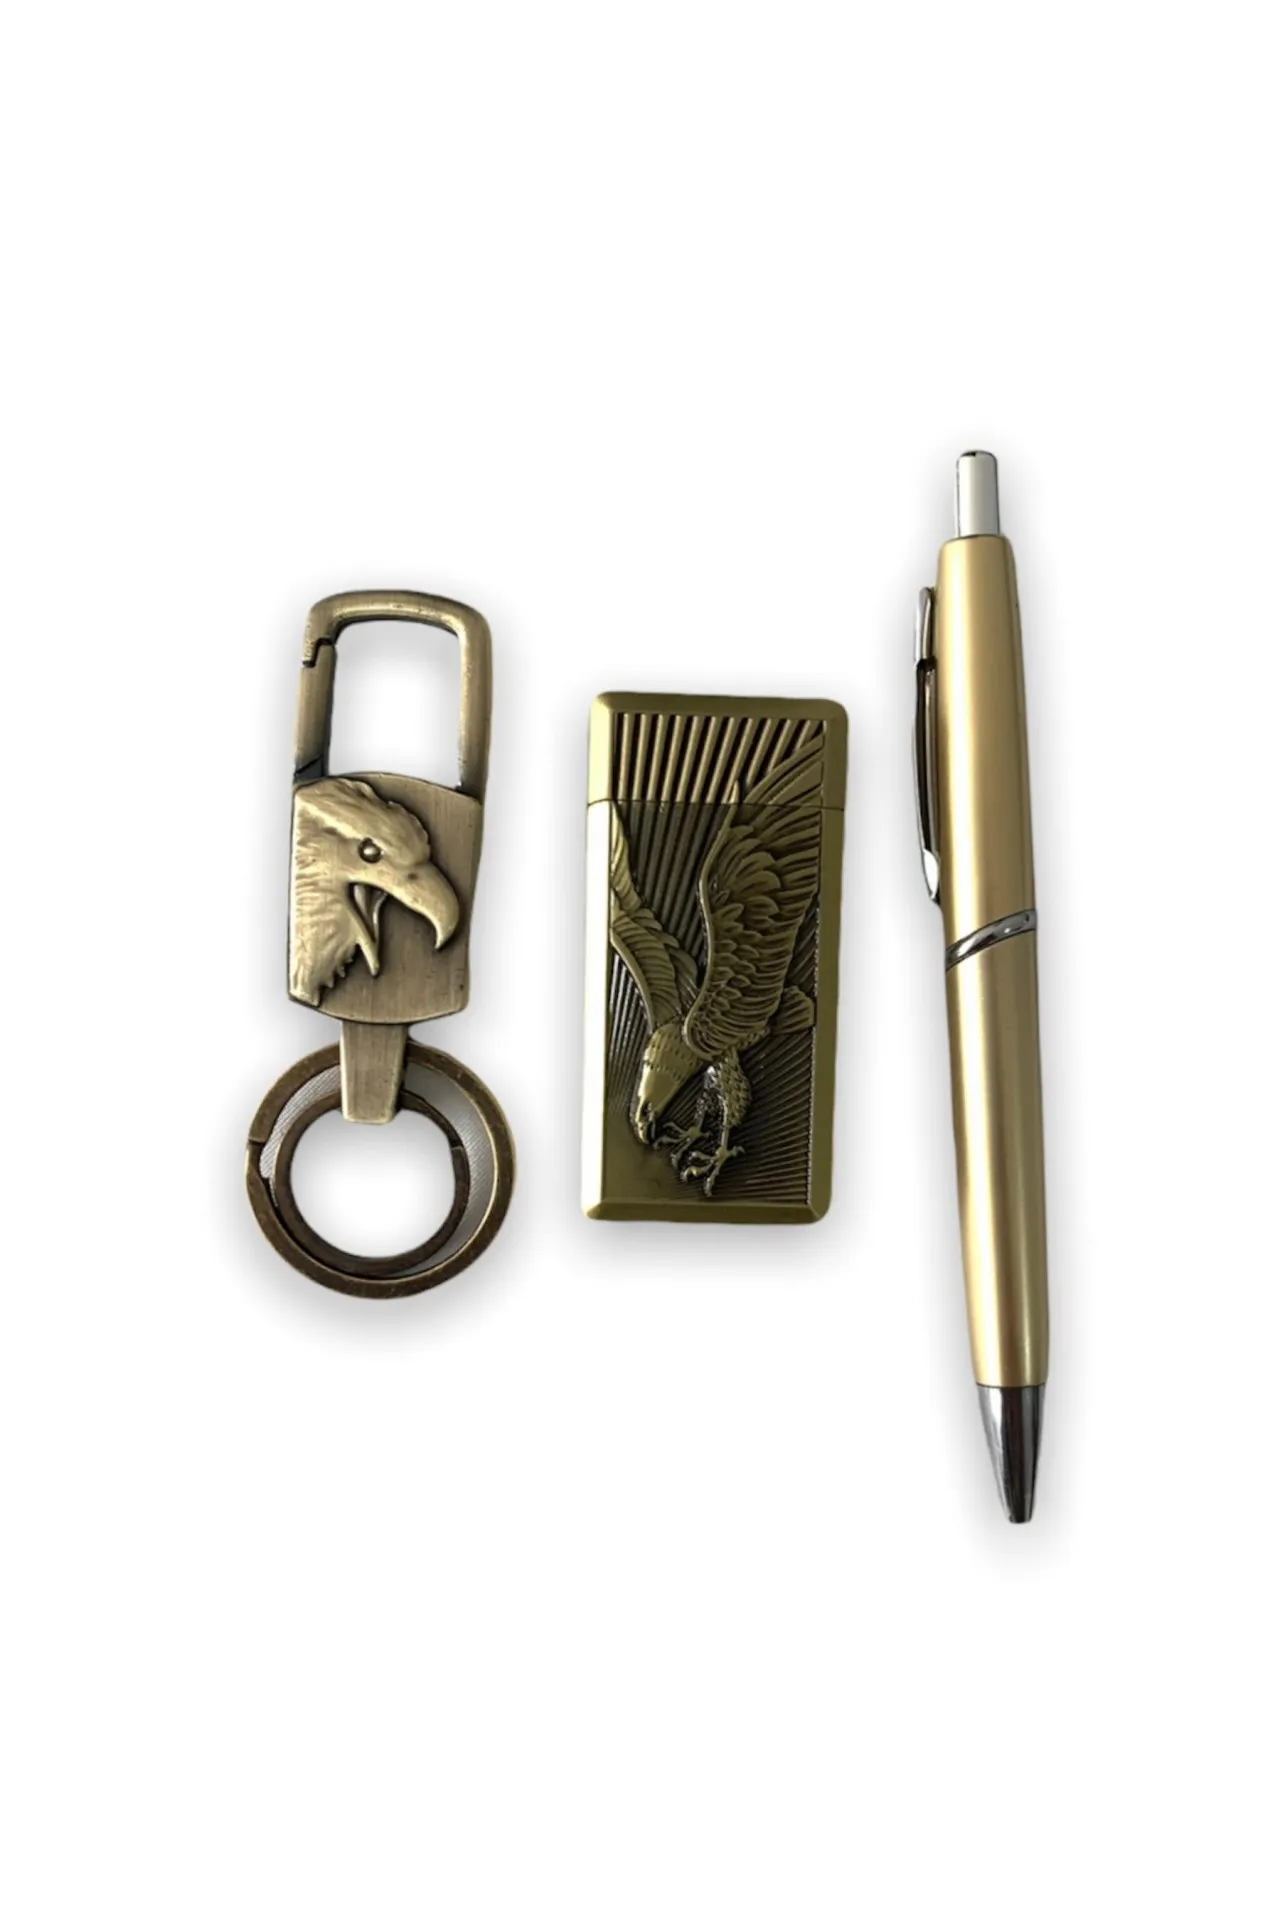 Подарочный набор - брелок, ручка, зажигалка орел a022 SHK Gift#3